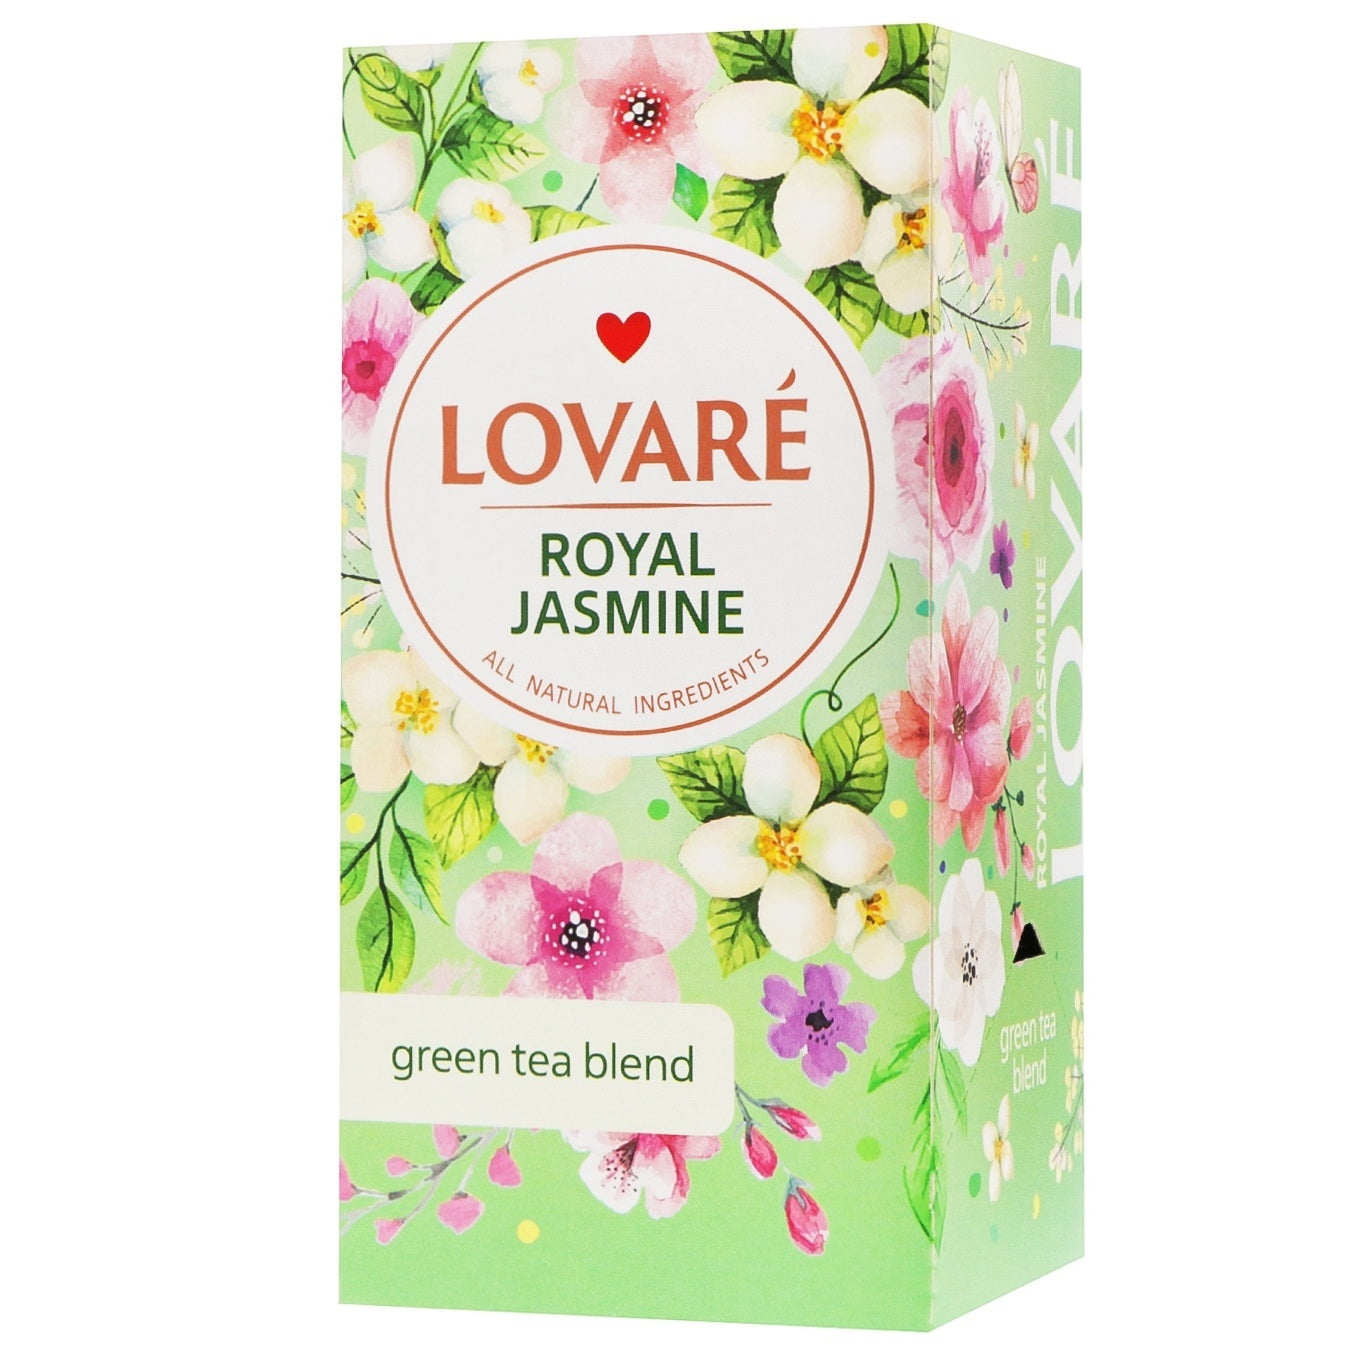 pack of Lovare Royal Jasmine Tea, 36g